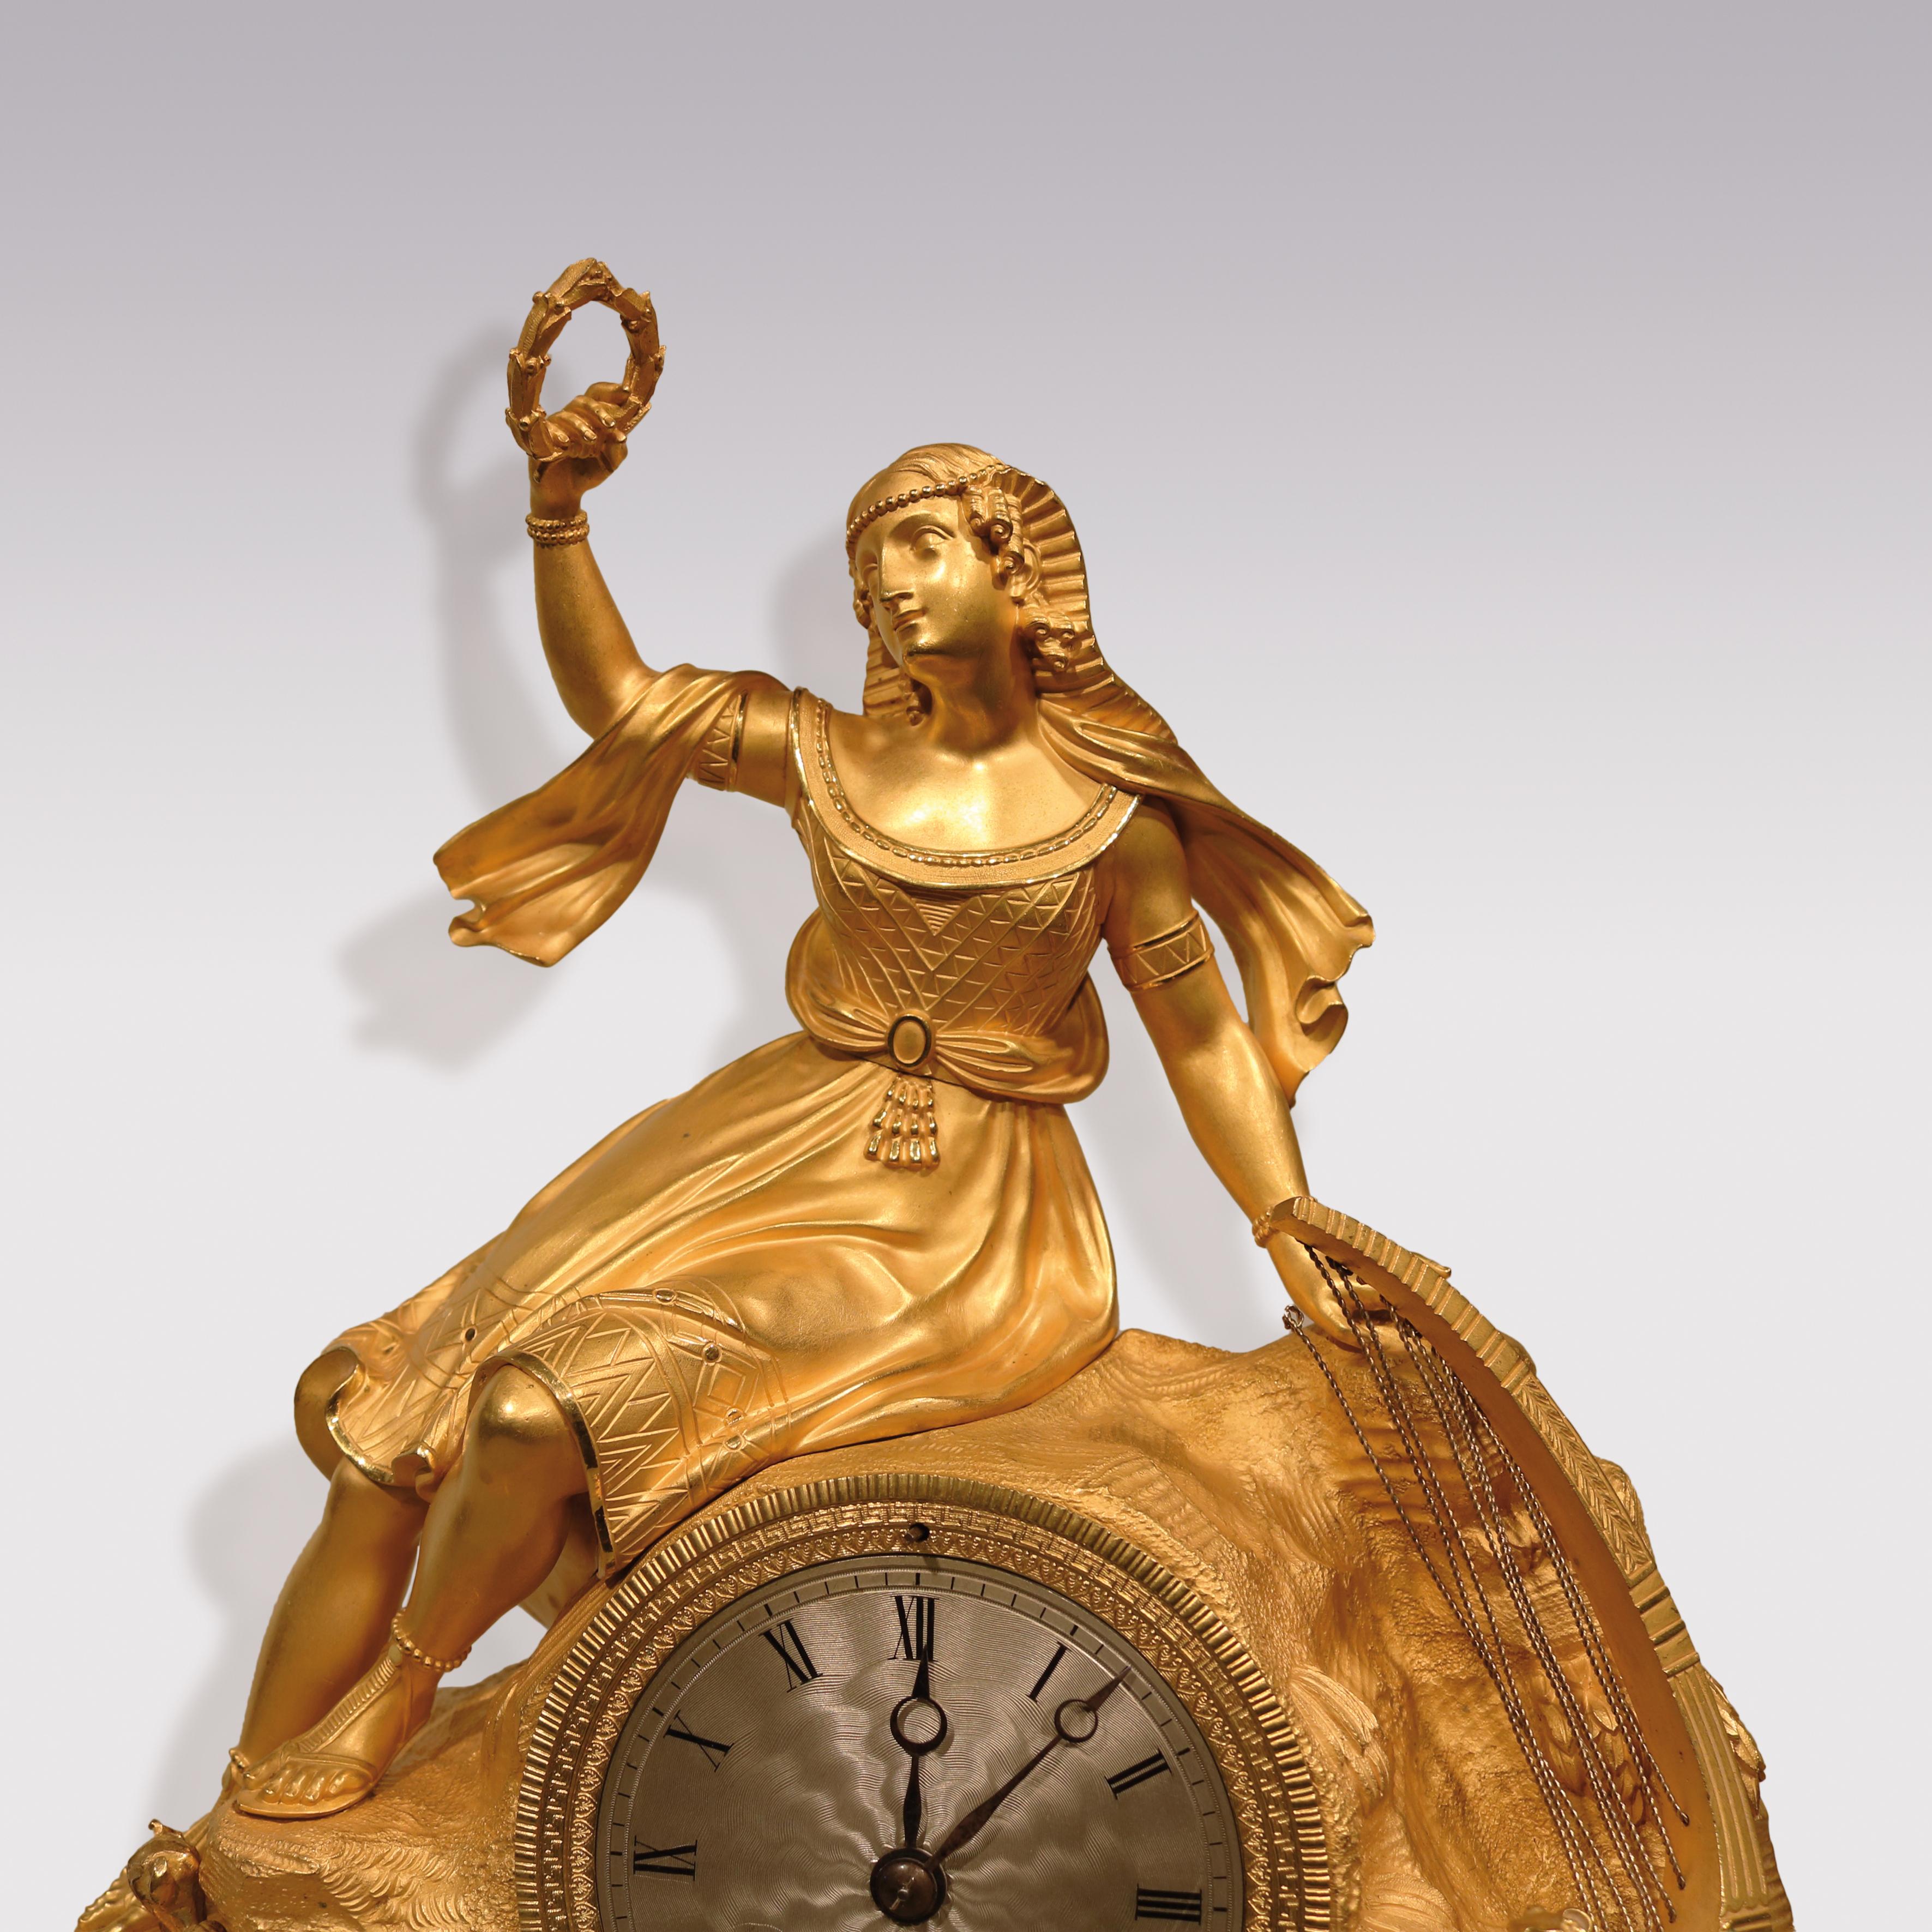 Une impressionnante horloge française du début du 19ème siècle par T H re Le Roy, avec un mouvement de 8 jours à suspension de soie et un cadran en argent. L'horloge, montée dans un boîtier en bronze doré représentant une Égyptienne avec une lyre,